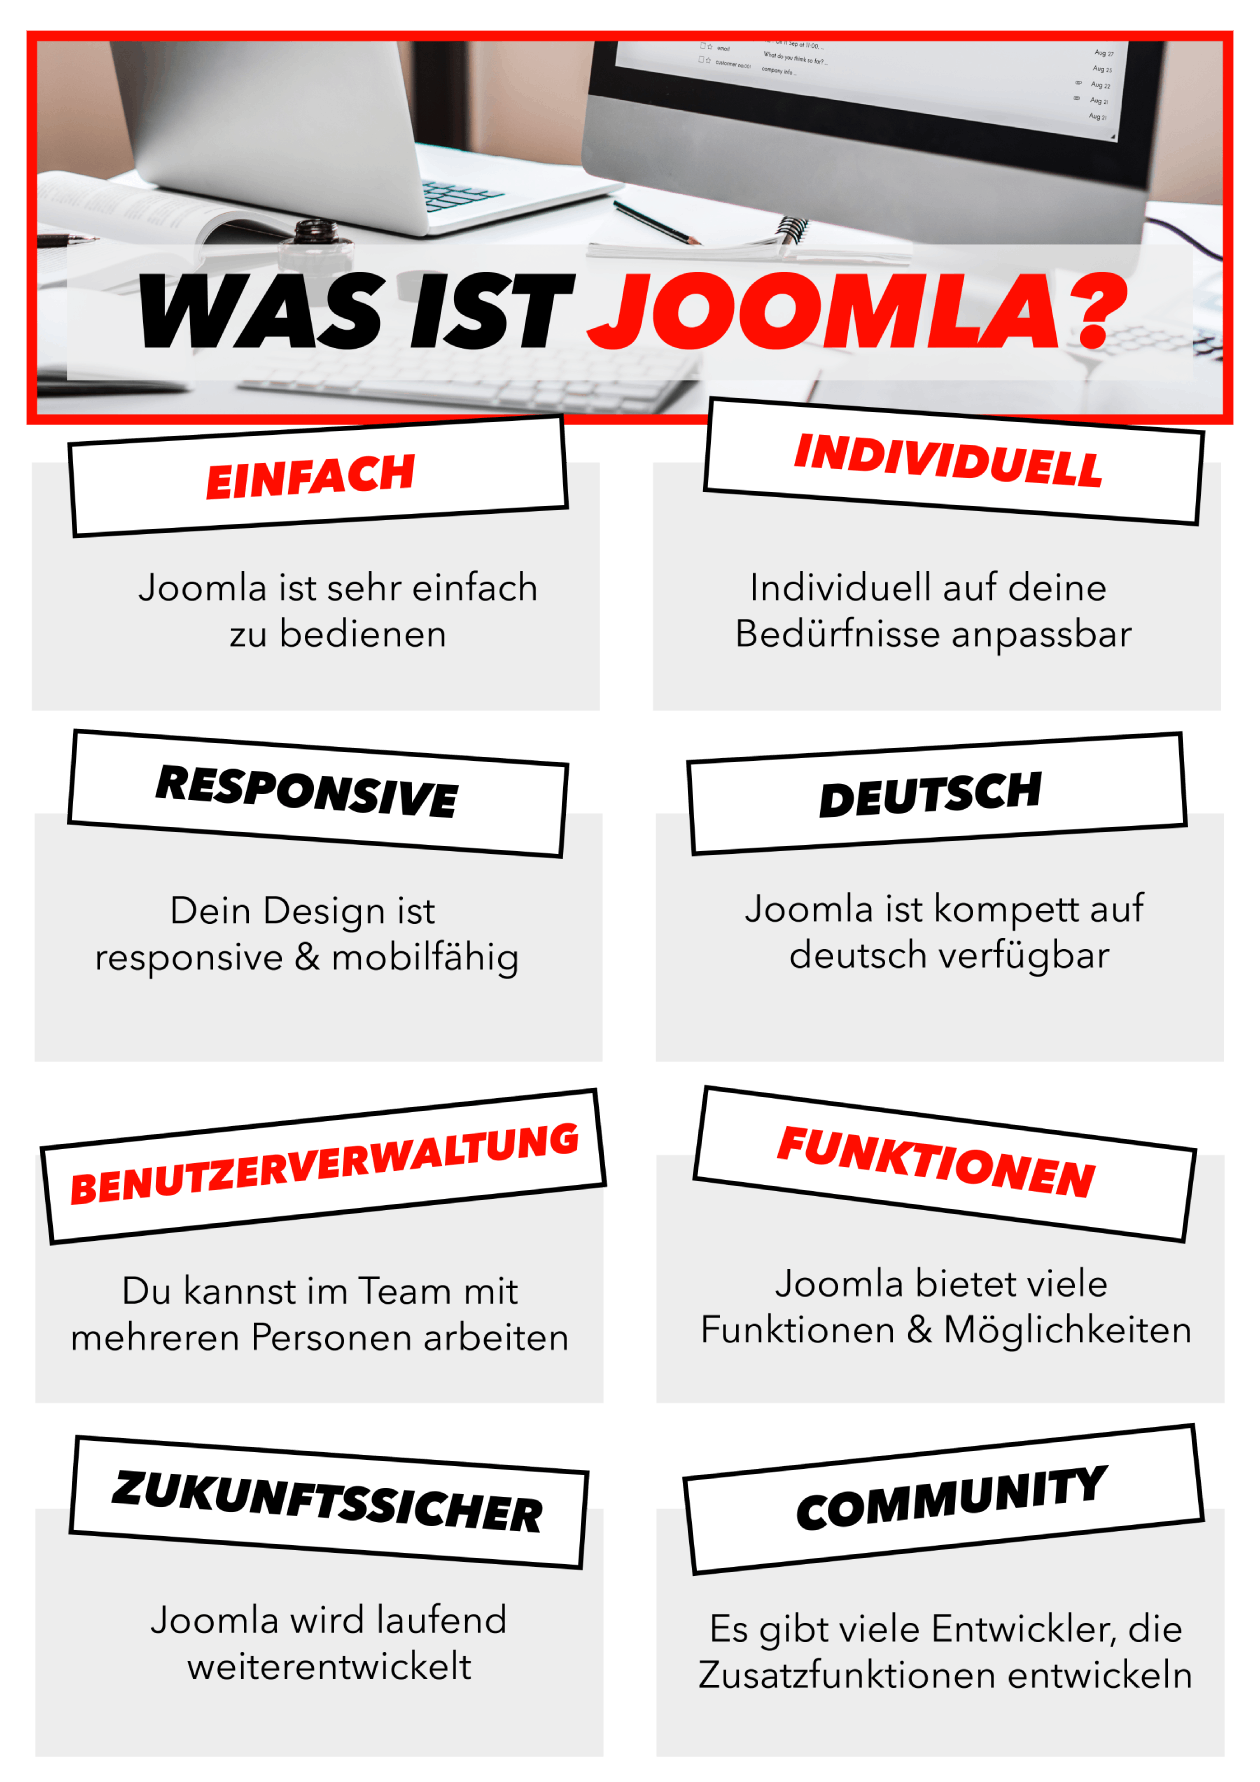 Die zahlreichen Vorteile von Joomla